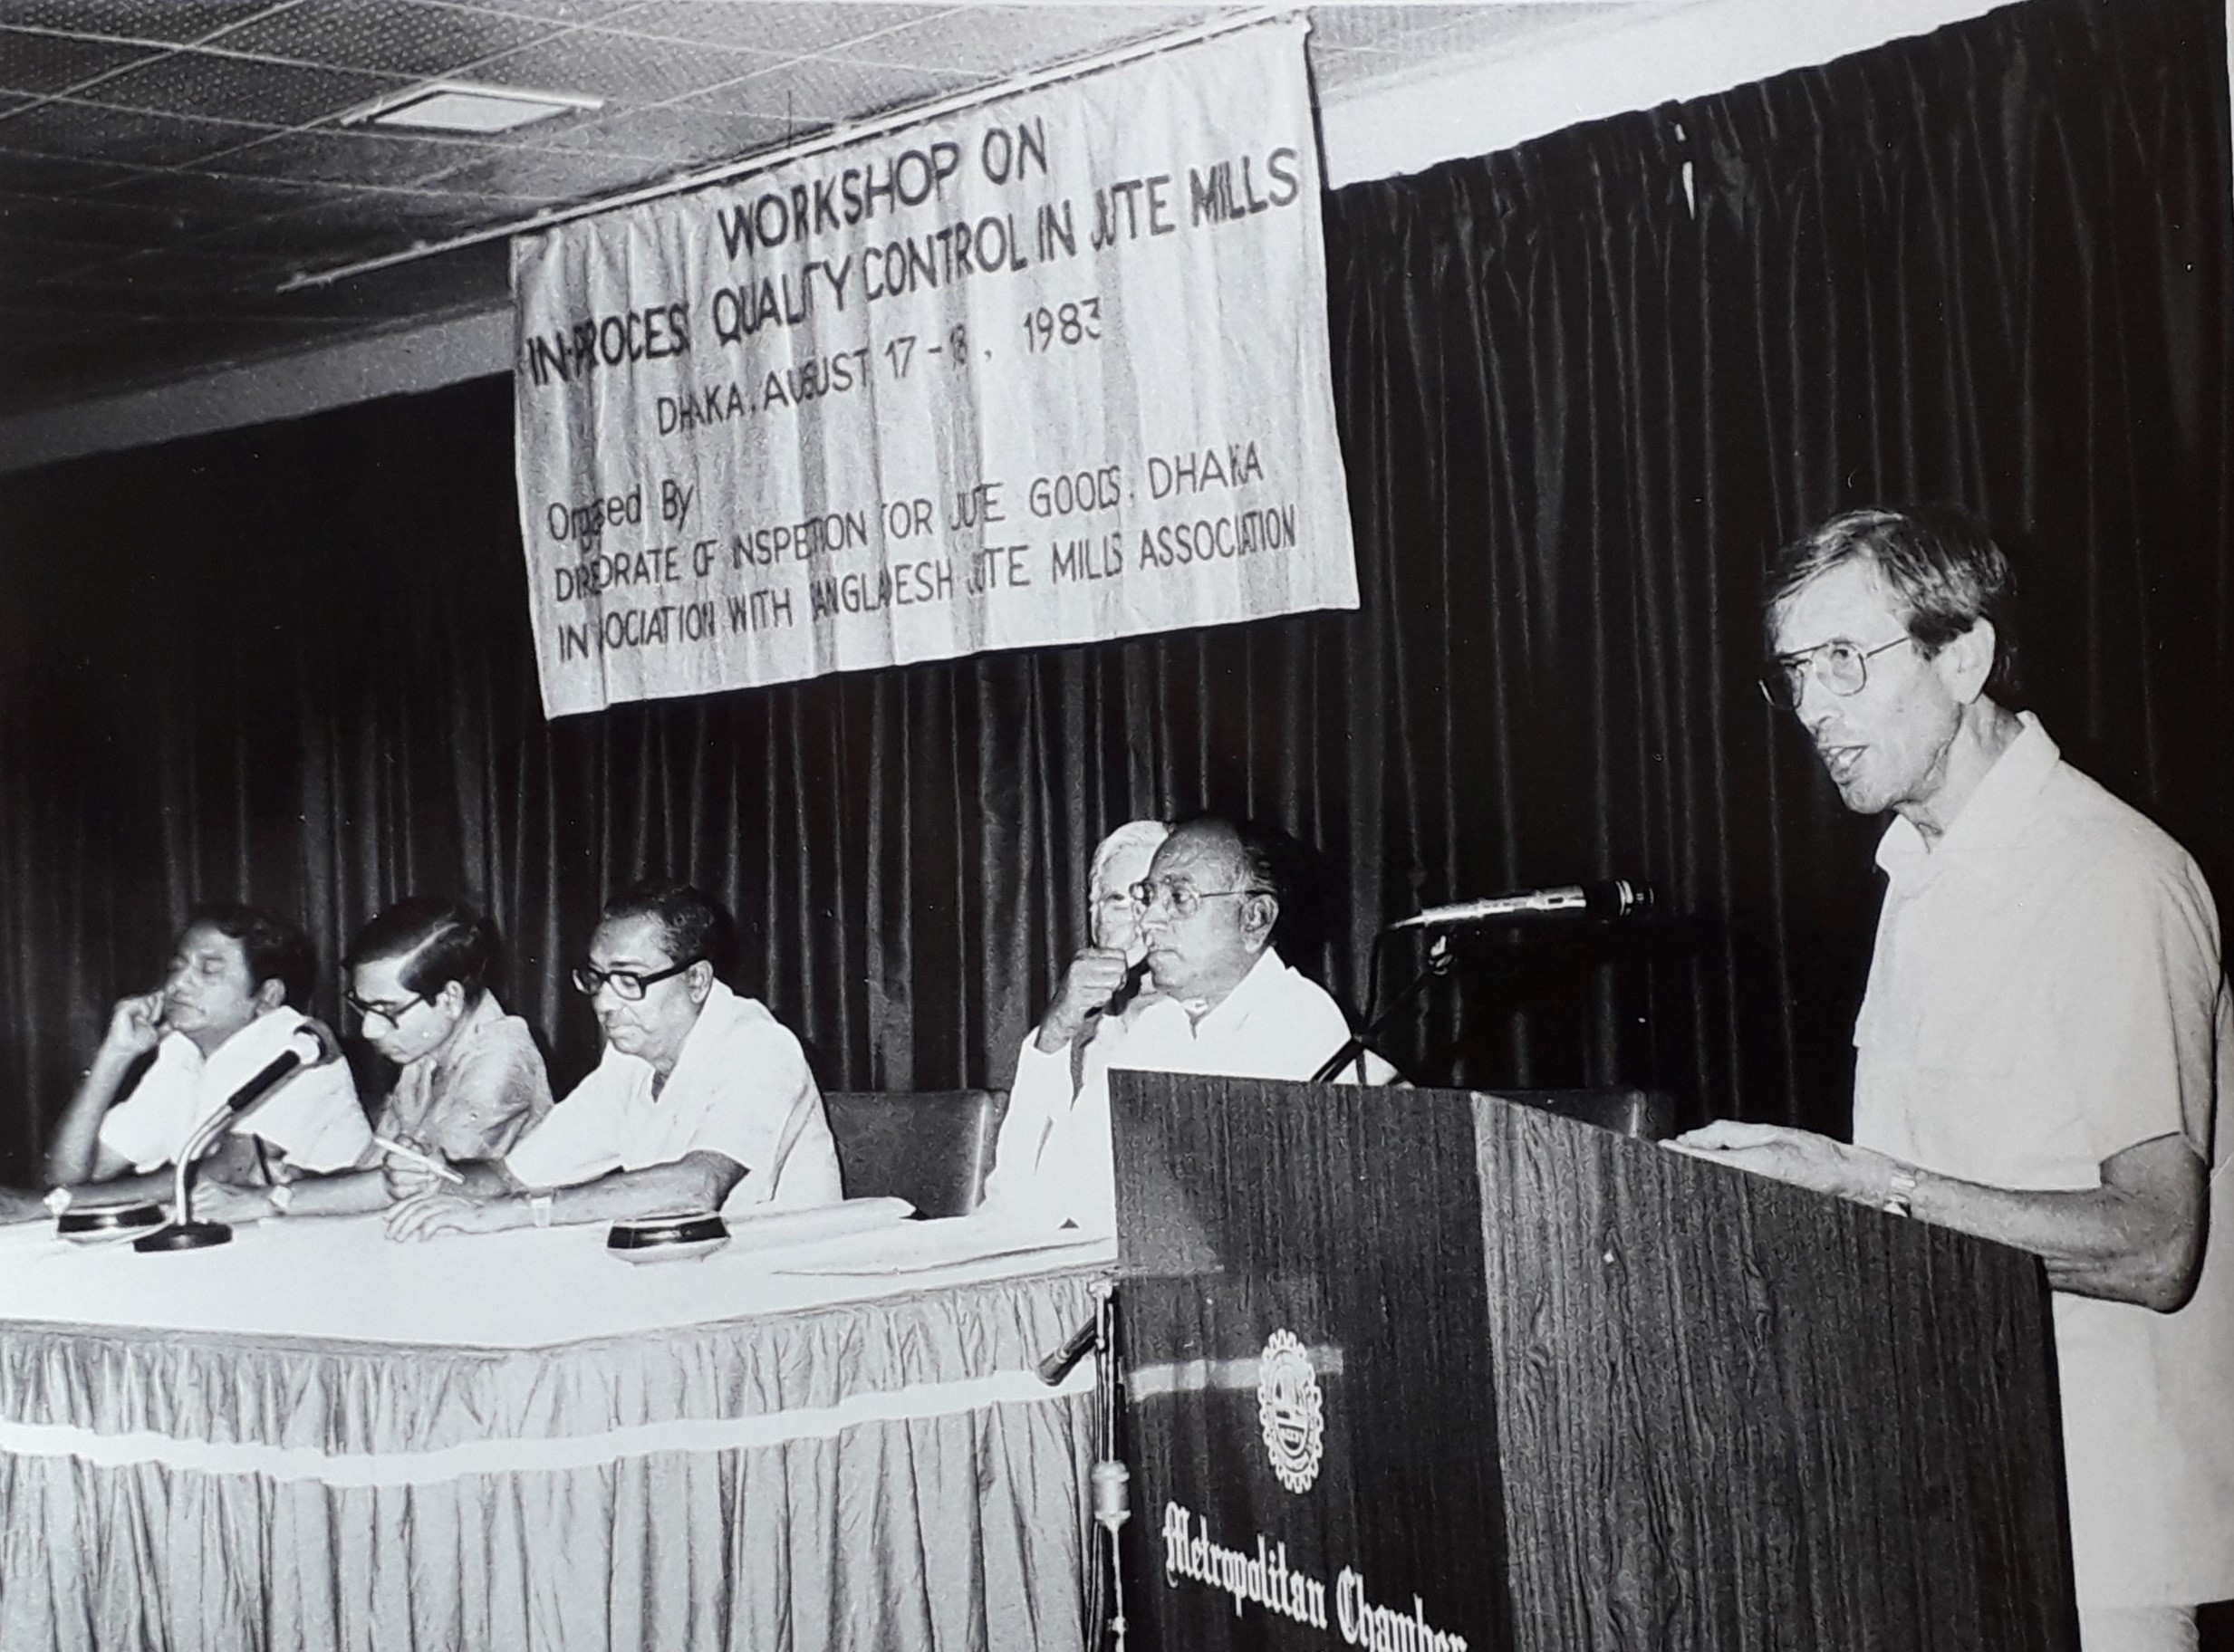 Jim Gordon speaking at a Jute Manufacturing Workshop in Bangladesh in 1983